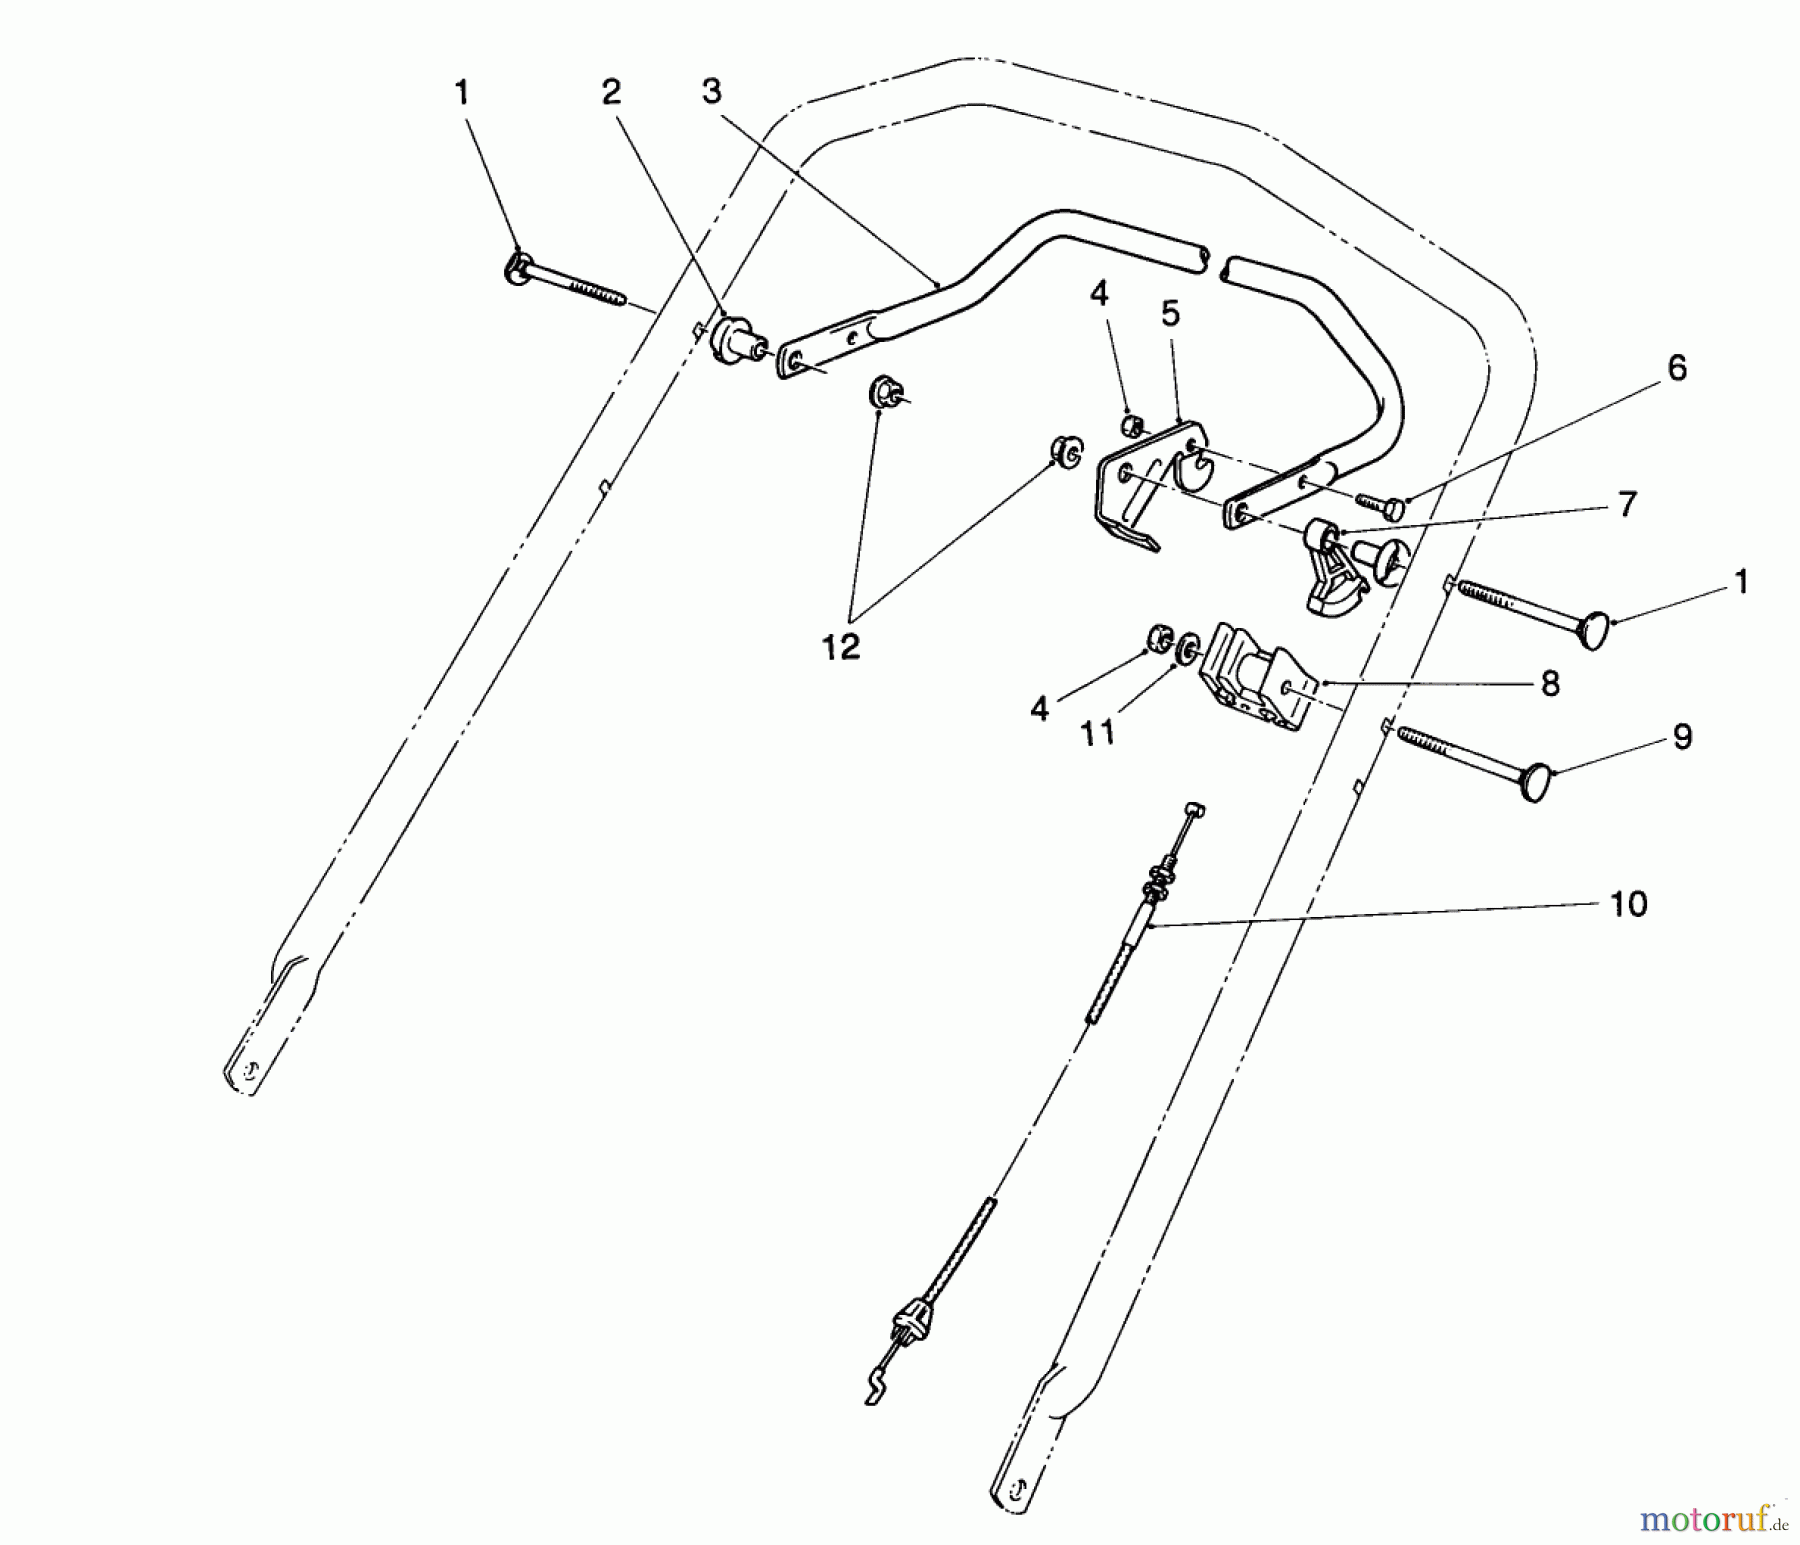  Toro Neu Mowers, Walk-Behind Seite 2 26625BG - Toro Lawnmower, 1992 (2000001-2999999) TRACTION CONTROL ASSEMBLY